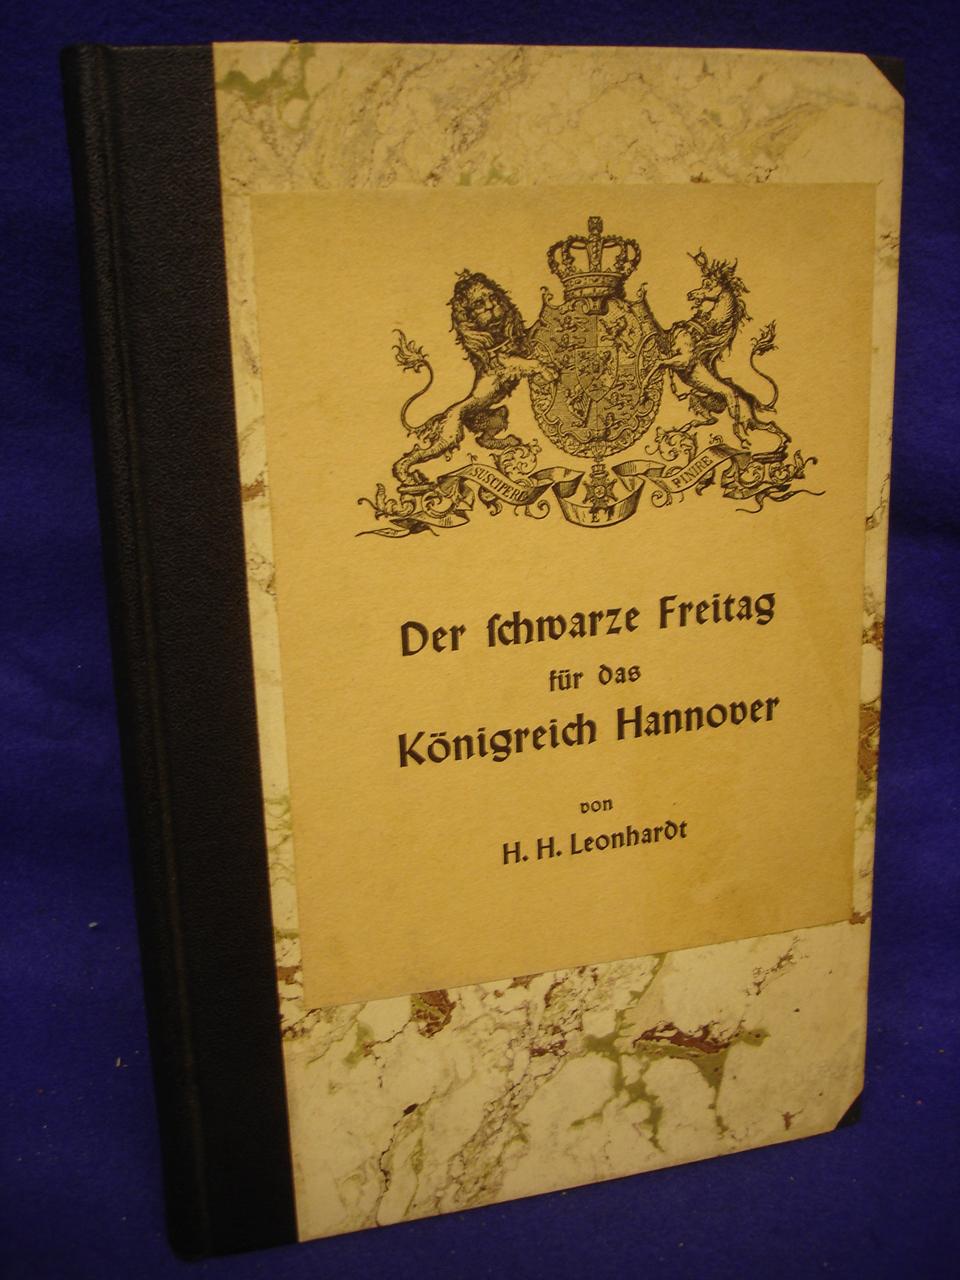 Der schwarze Freitag für das Königreich Hannover / Die Lösung der hannover-braunschweigischen Frage im historisch-monarchischem Sinne. 